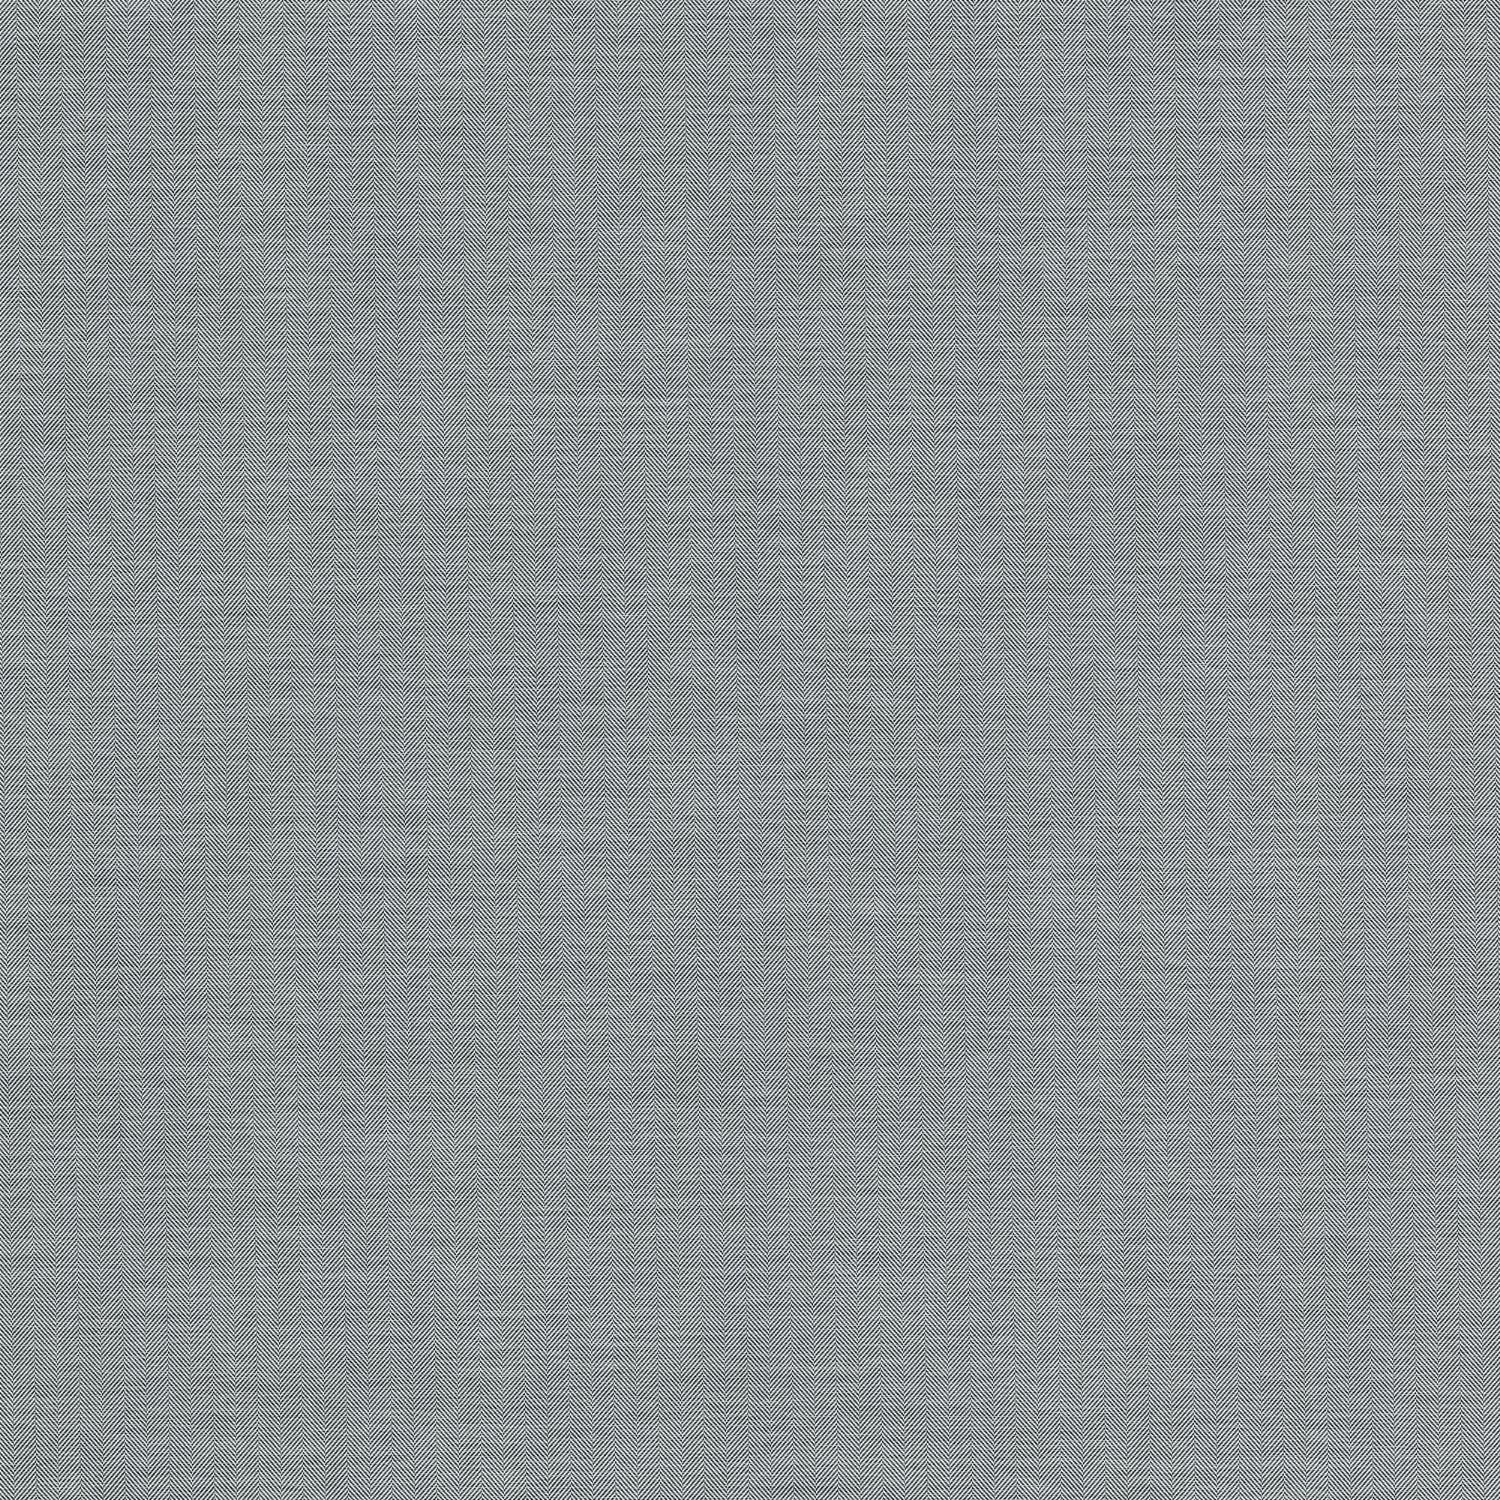 NG10-film-adhesif-decoratif-colle-anti-bulle-aire-textile-tissu-motif-point-de-hongrie-gris-texture-renovation-meuble-mur-3A